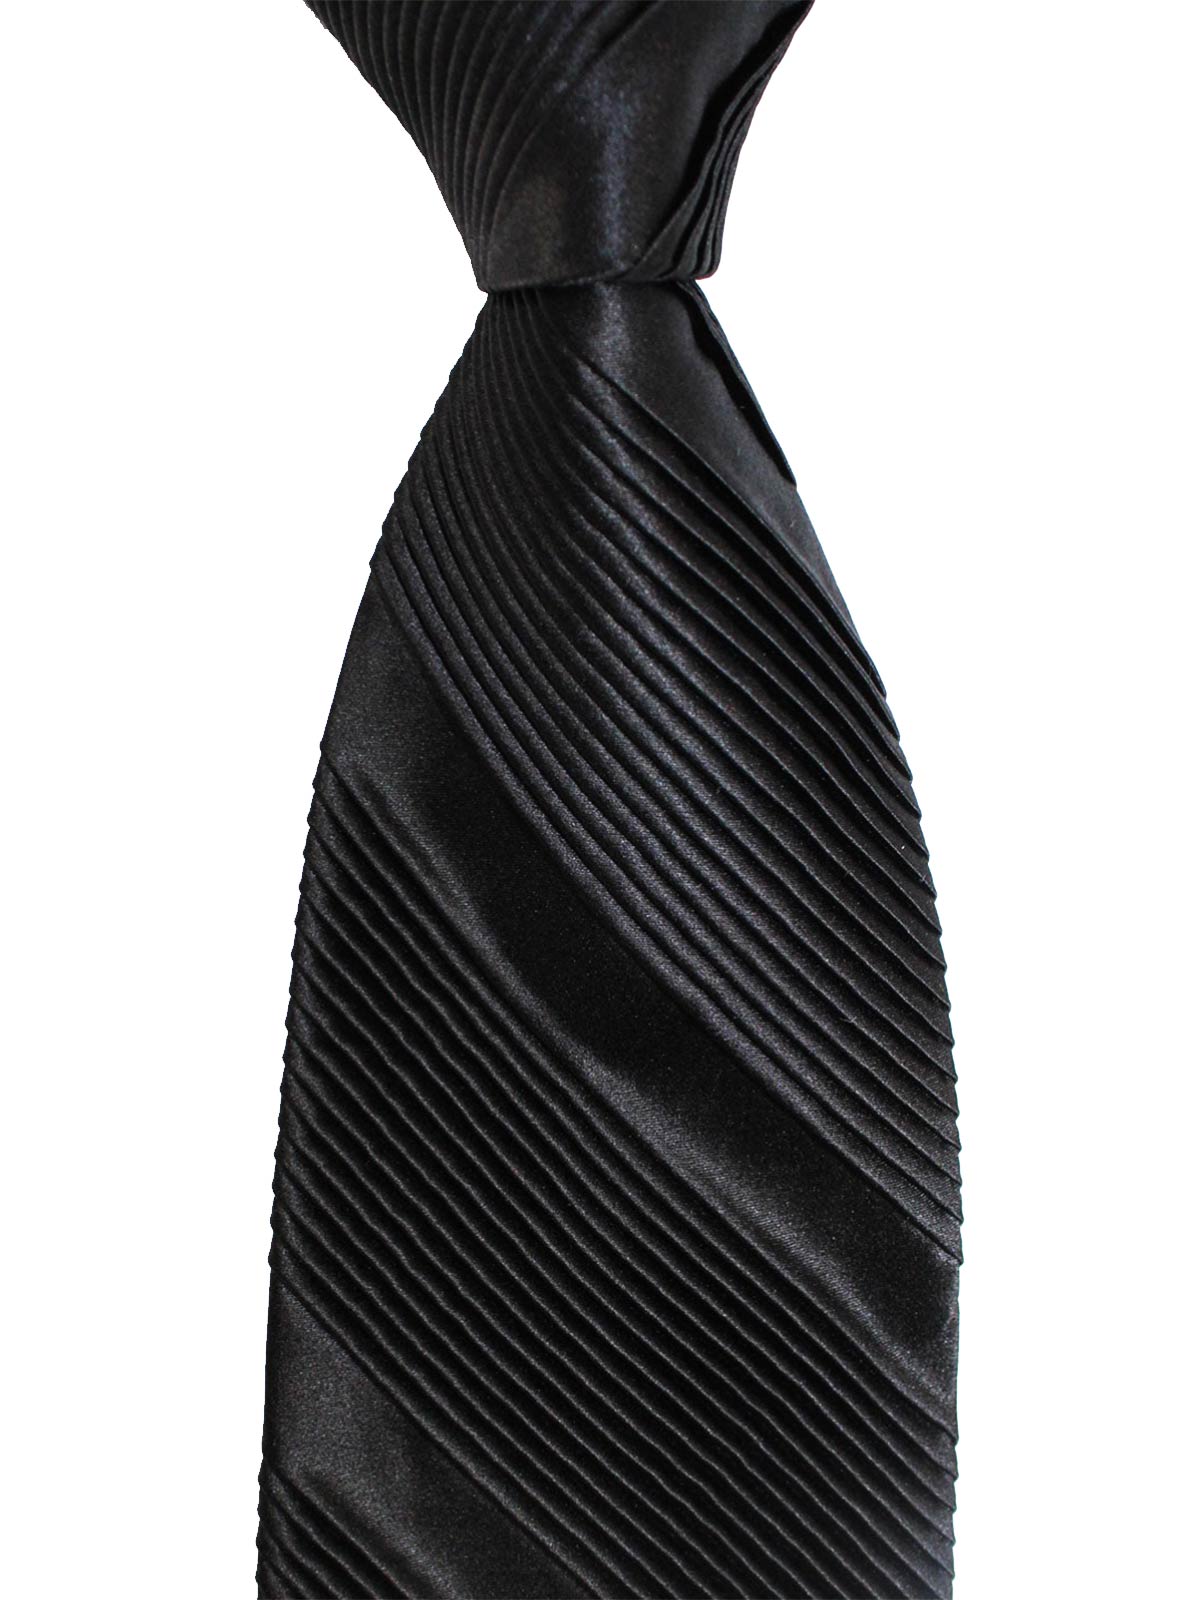 Stefano Ricci Pleated Silk Tie Black Solid Design